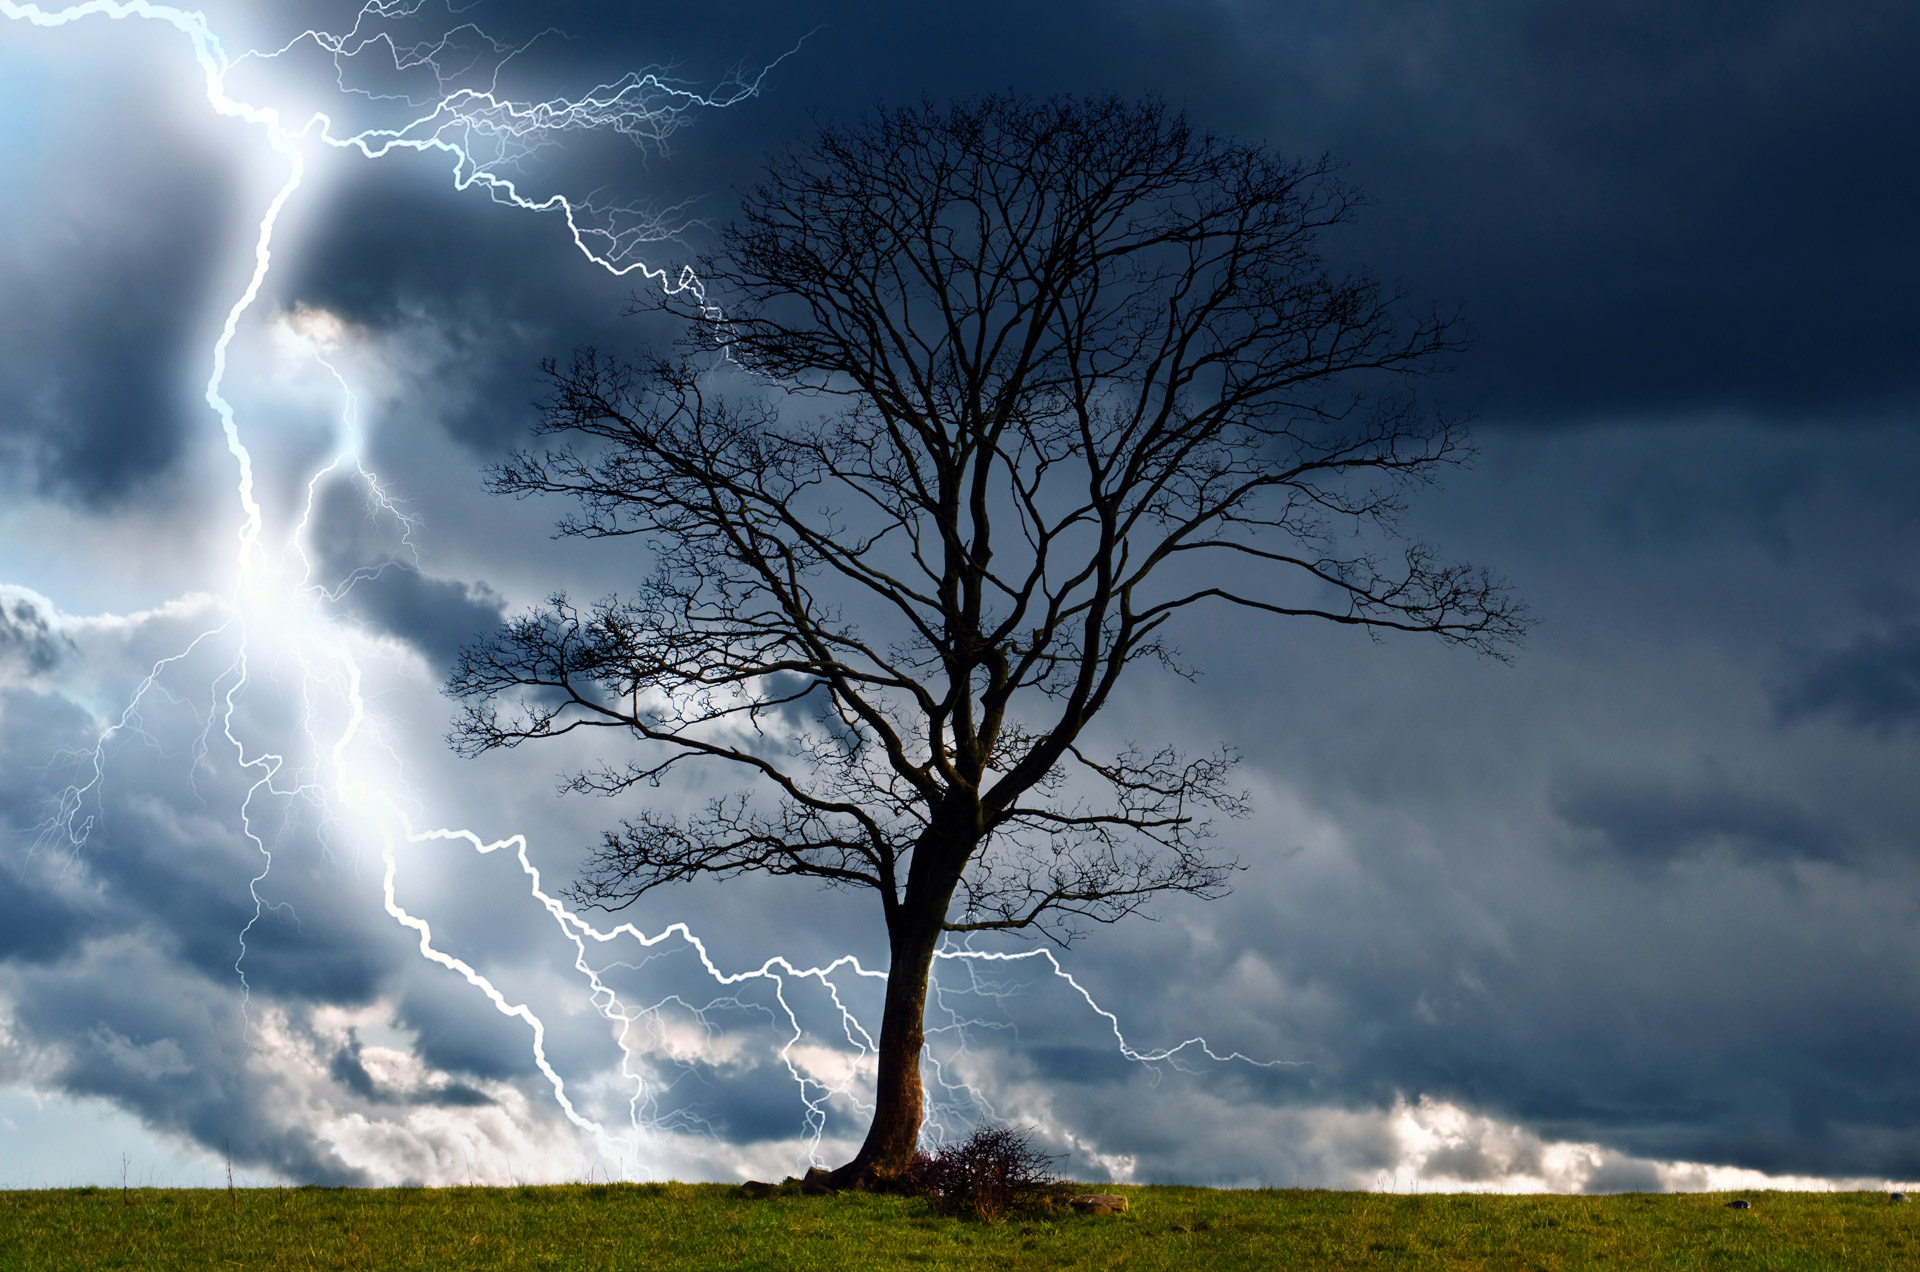 Скачать обои бесплатно Дерево, Молния, Буря, Земля/природа картинка на рабочий стол ПК